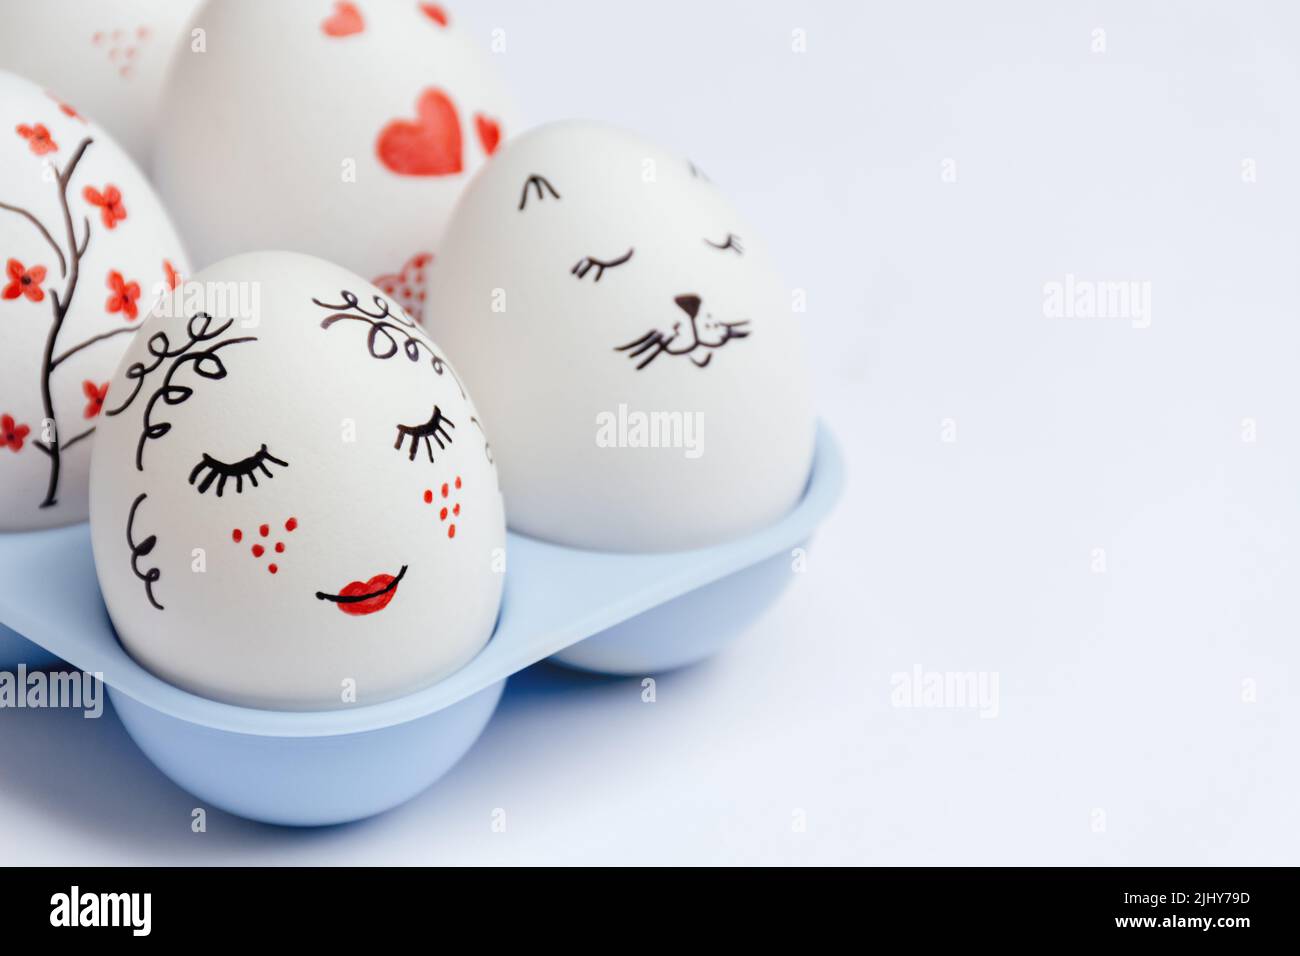 Gros plan sur les œufs de Pâques magnifiquement peints - beauté douce avec les lèvres rouges, le visage du chat, les coeurs et les fleurs dans le support bleu sur fond blanc. Classe de maître artisanale. Mise au point sélective. Copier l'espace Banque D'Images